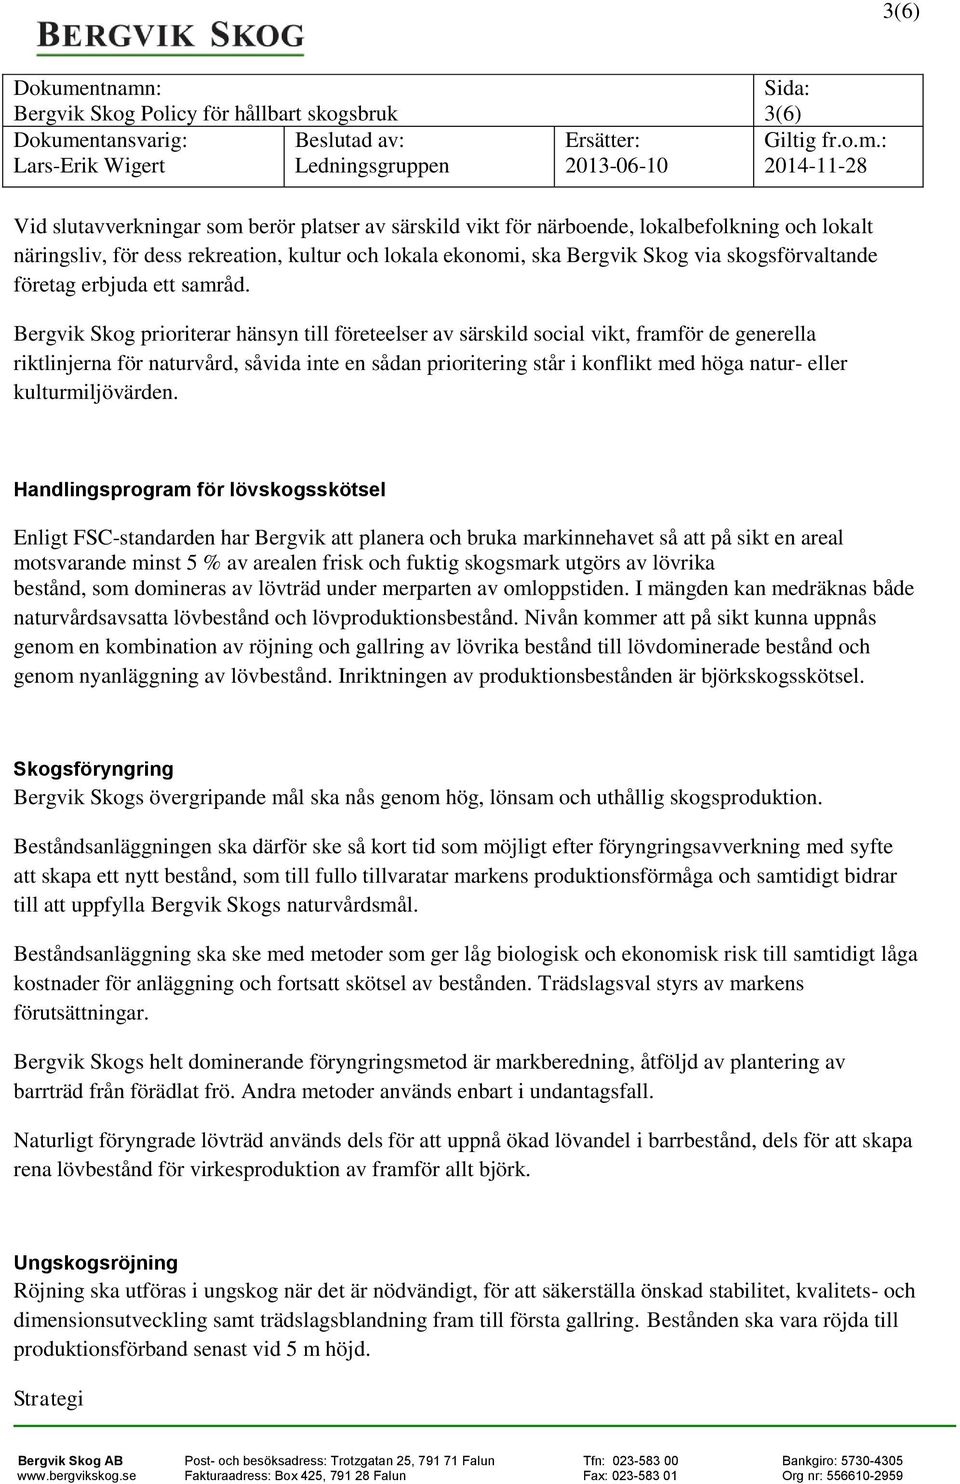 Bergvik Skog prioriterar hänsyn till företeelser av särskild social vikt, framför de generella riktlinjerna för naturvård, såvida inte en sådan prioritering står i konflikt med höga natur- eller